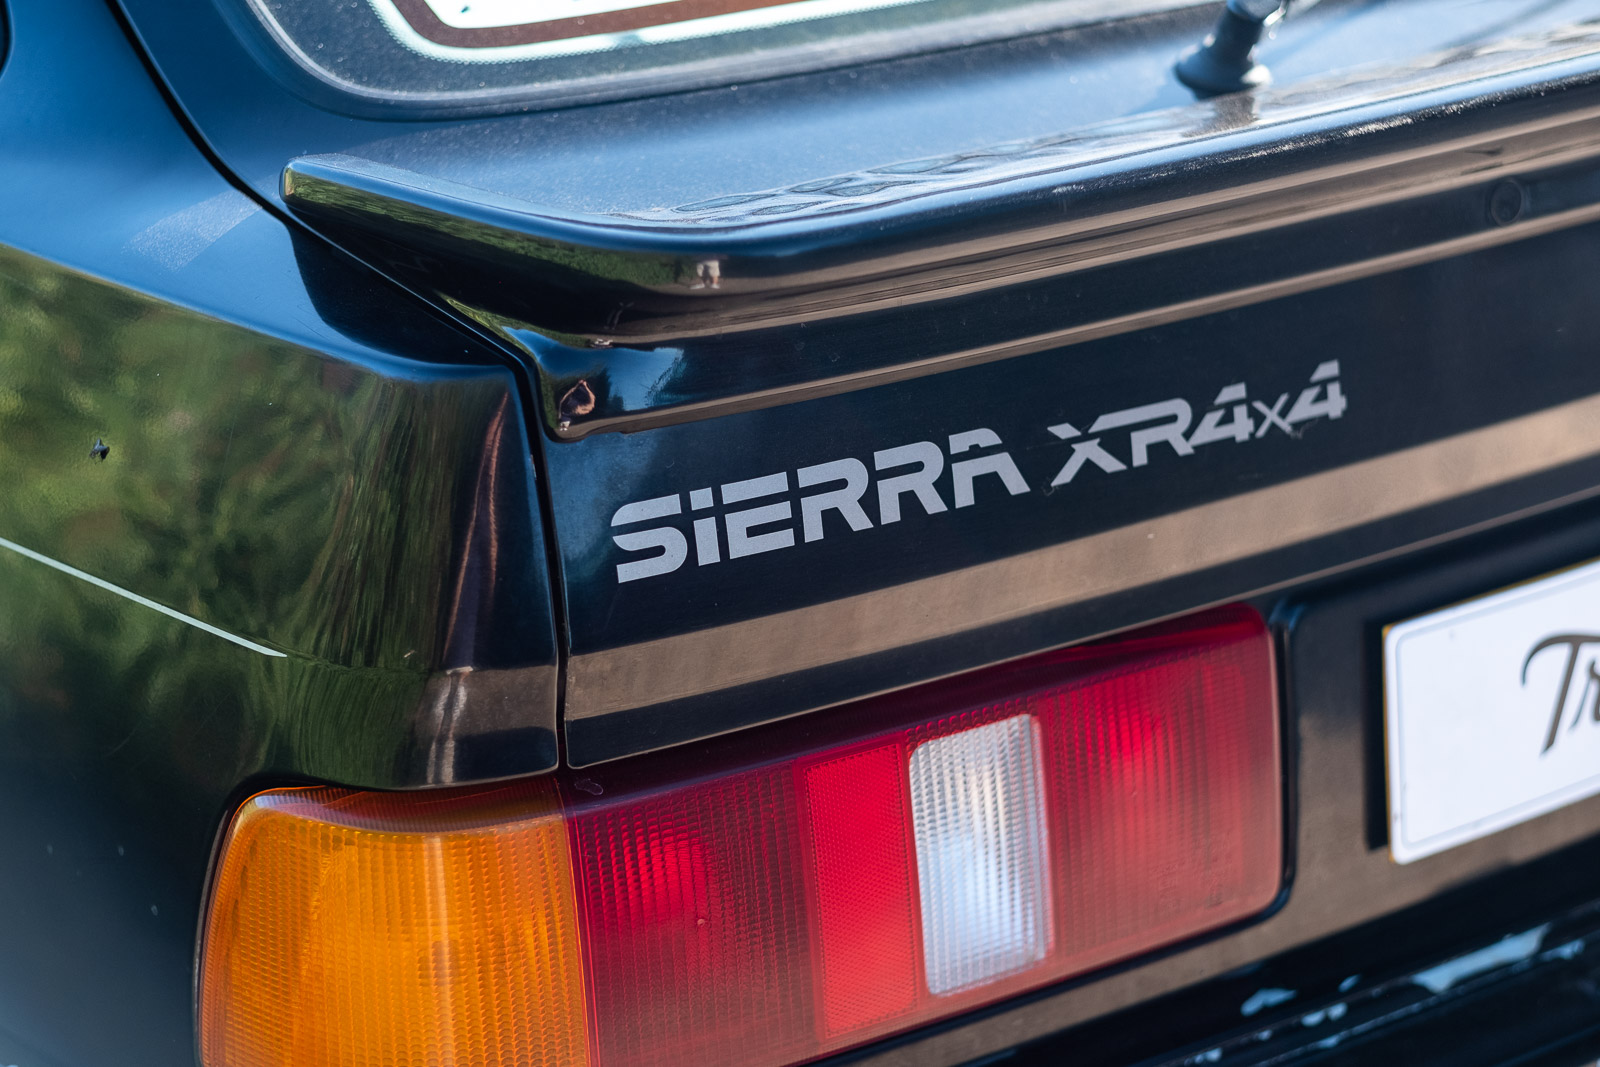 1988 Ford Sierra XR4x4